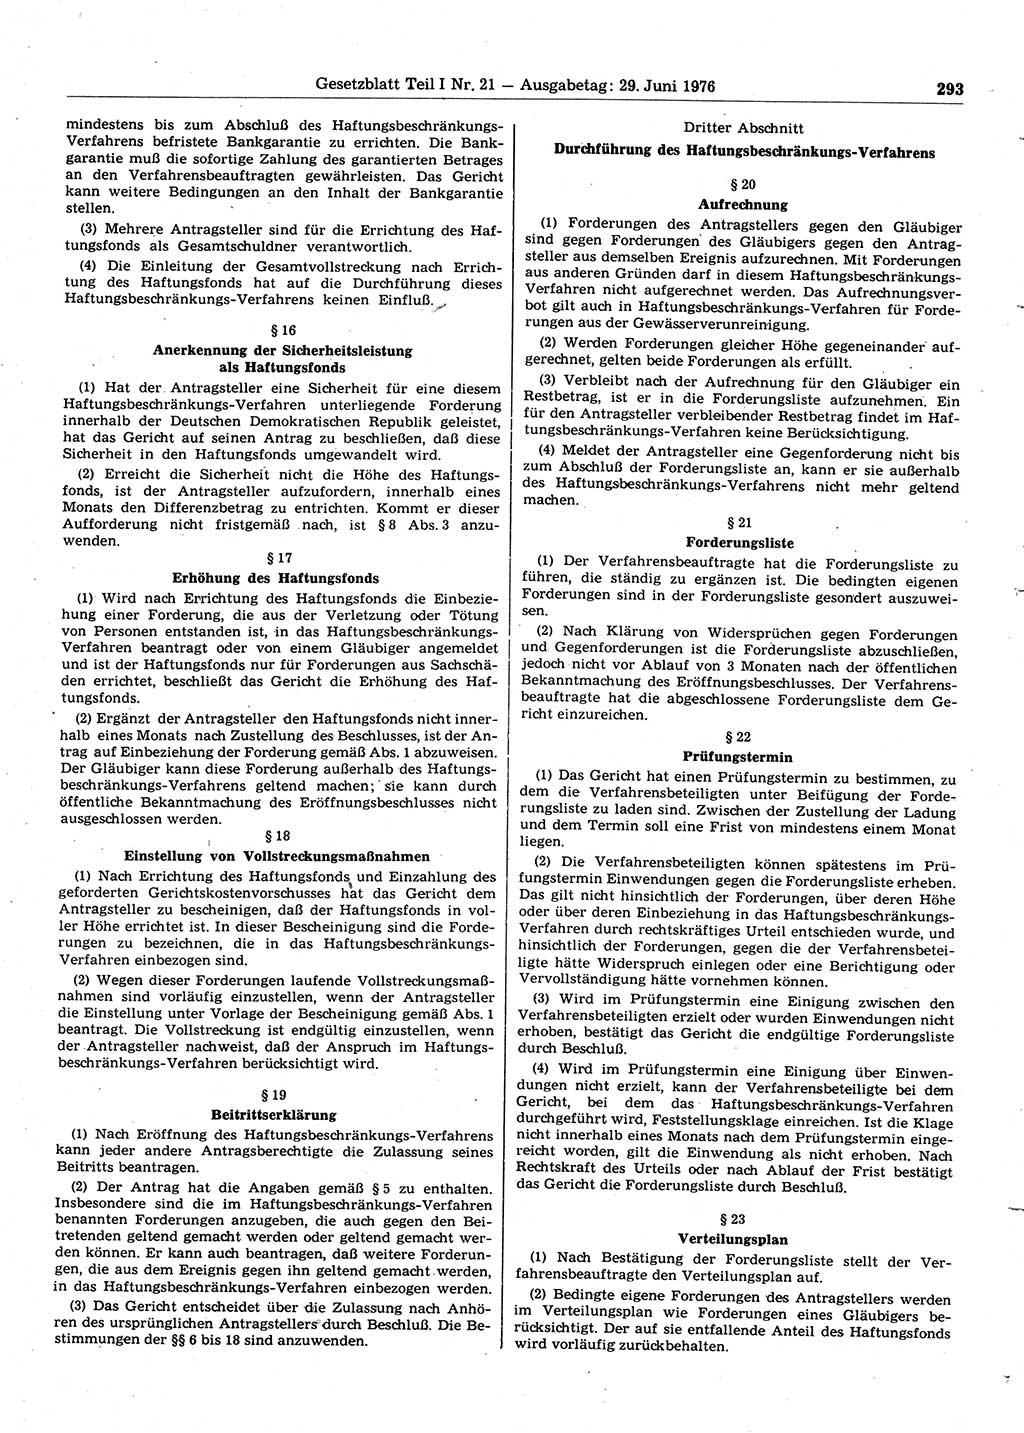 Gesetzblatt (GBl.) der Deutschen Demokratischen Republik (DDR) Teil Ⅰ 1976, Seite 293 (GBl. DDR Ⅰ 1976, S. 293)